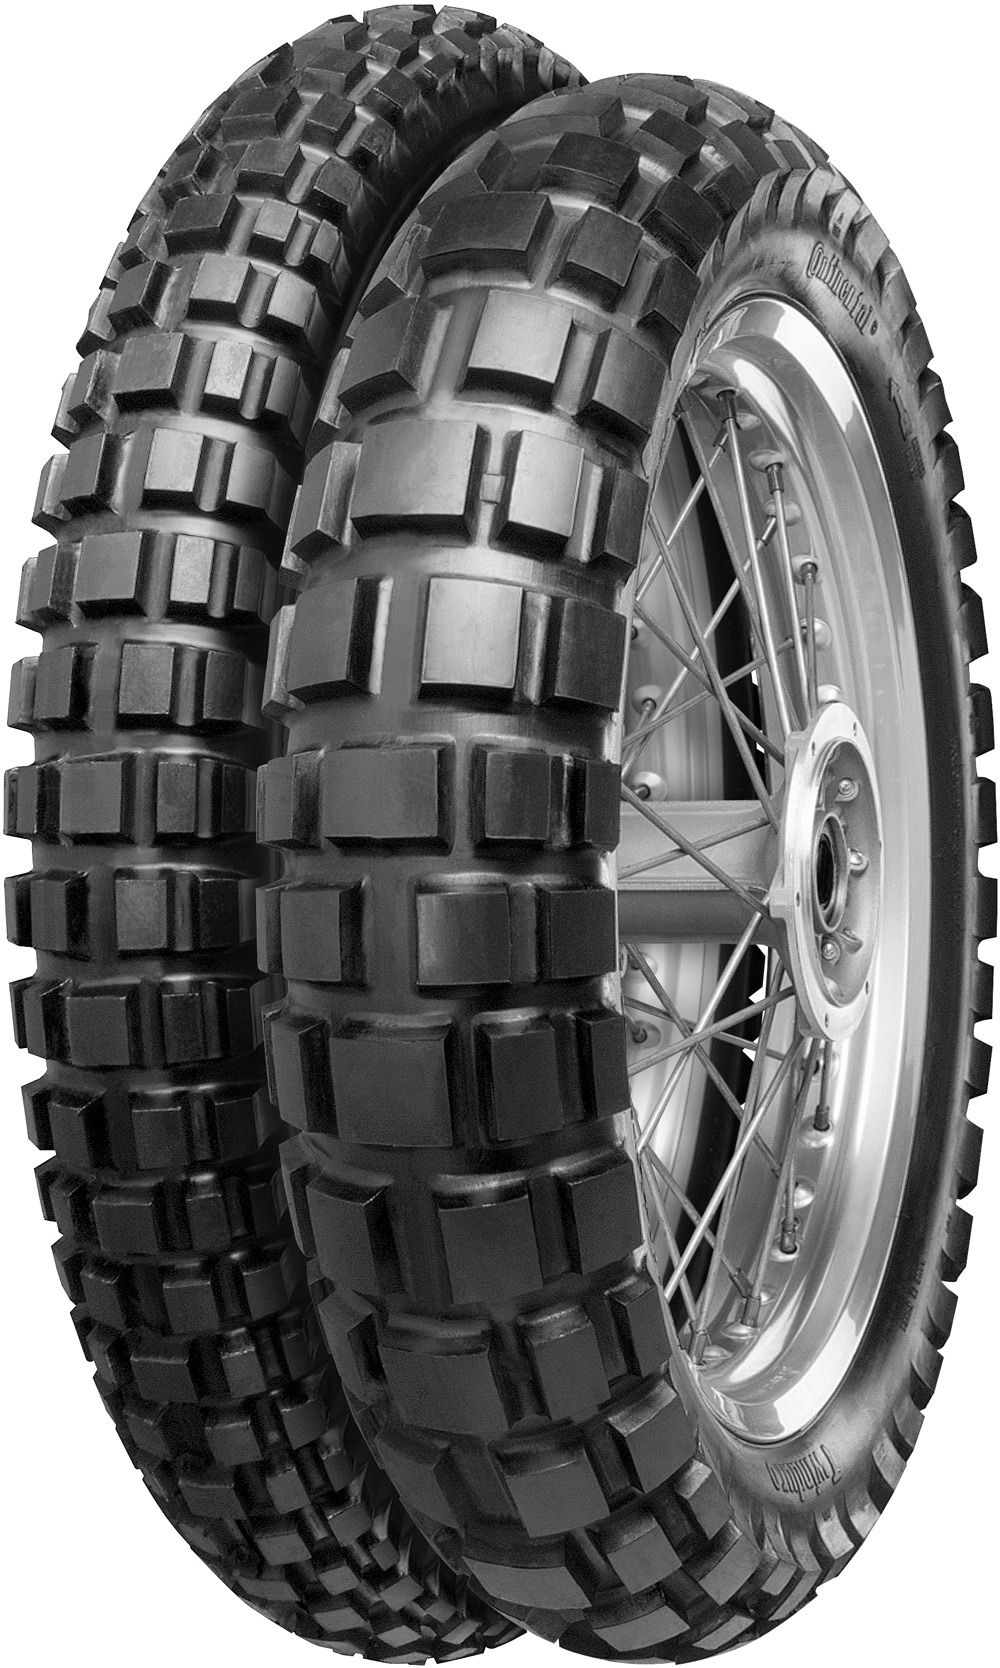 product_type-moto_tires CONTINENTAL TKC80TWDUR 130/80 R17 65T